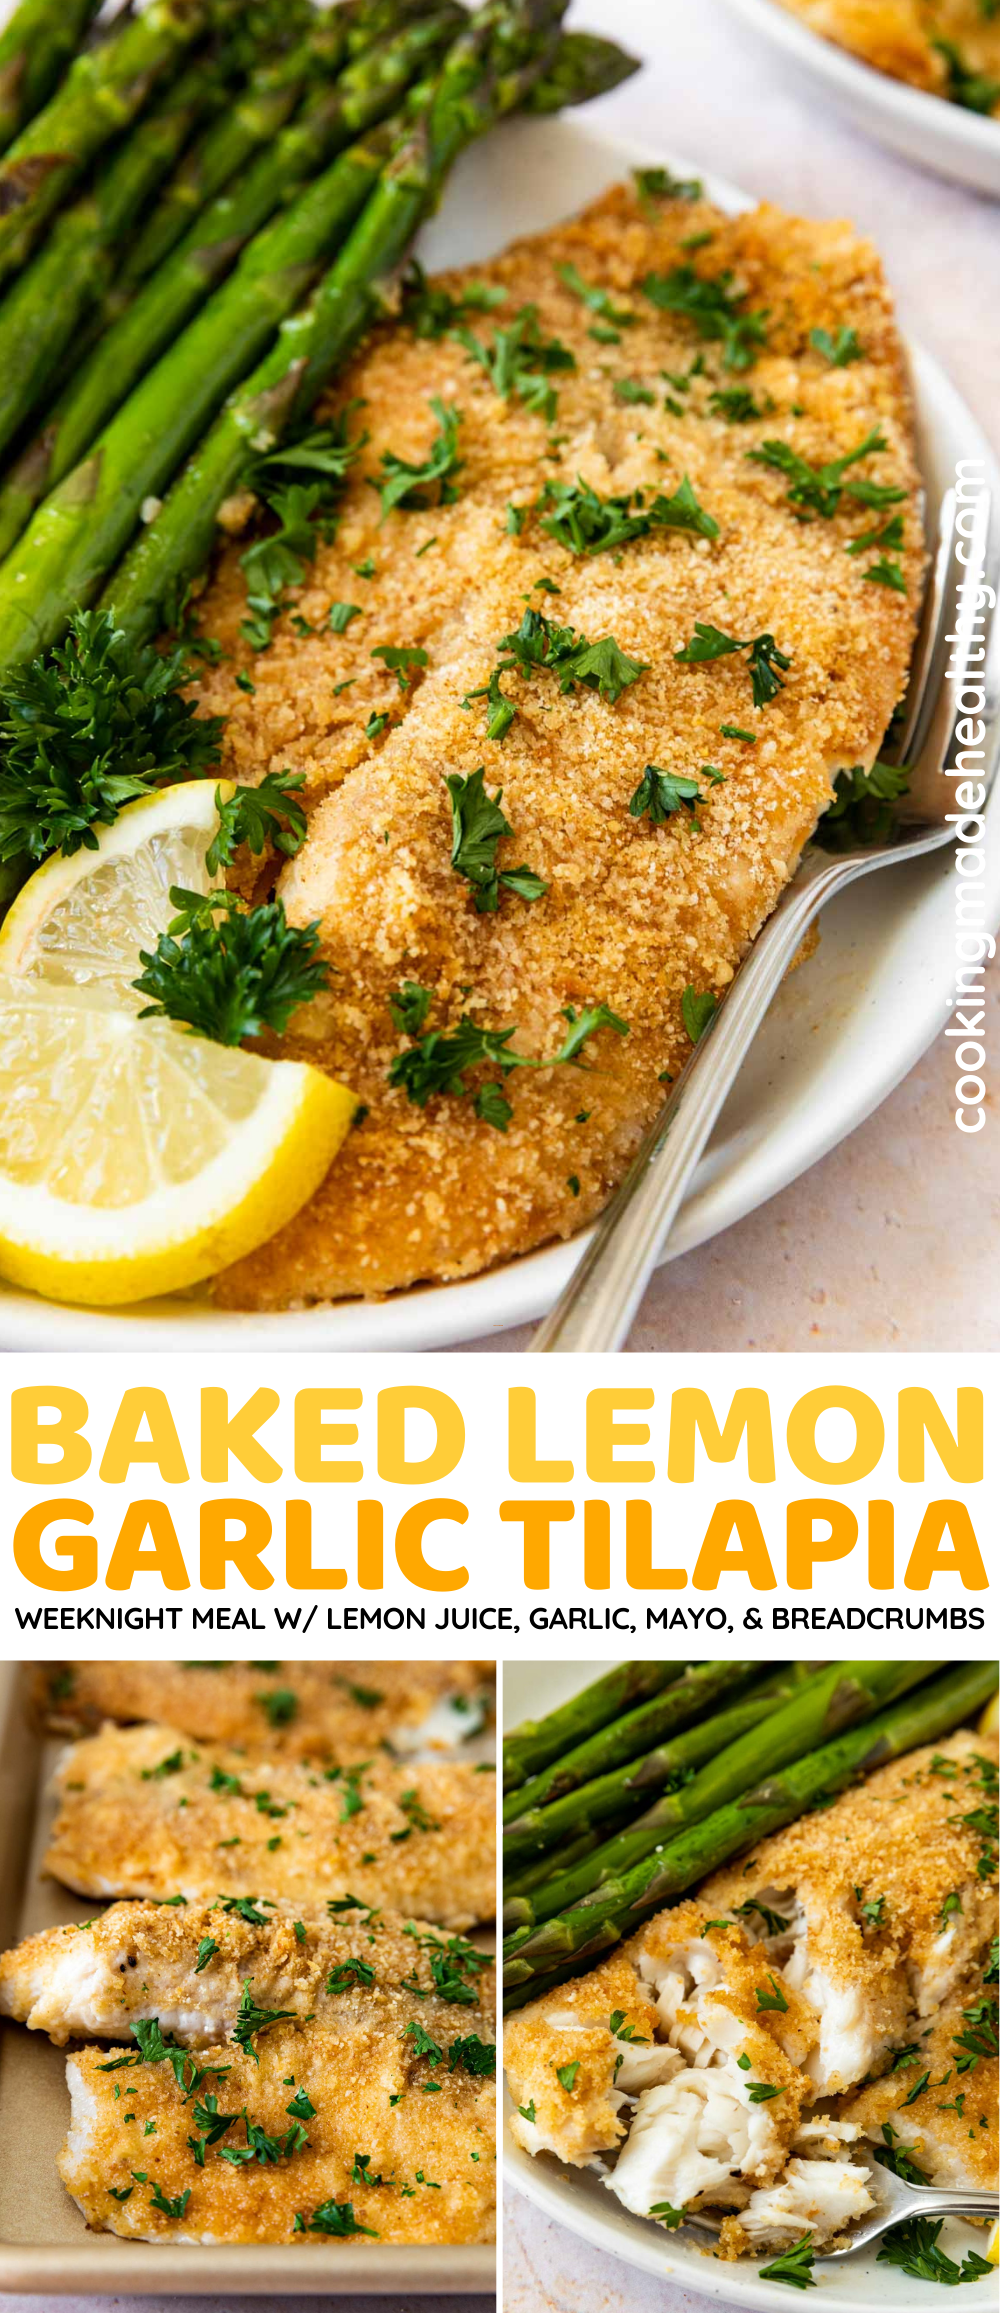 Baked Lemon Garlic Tilapia collage